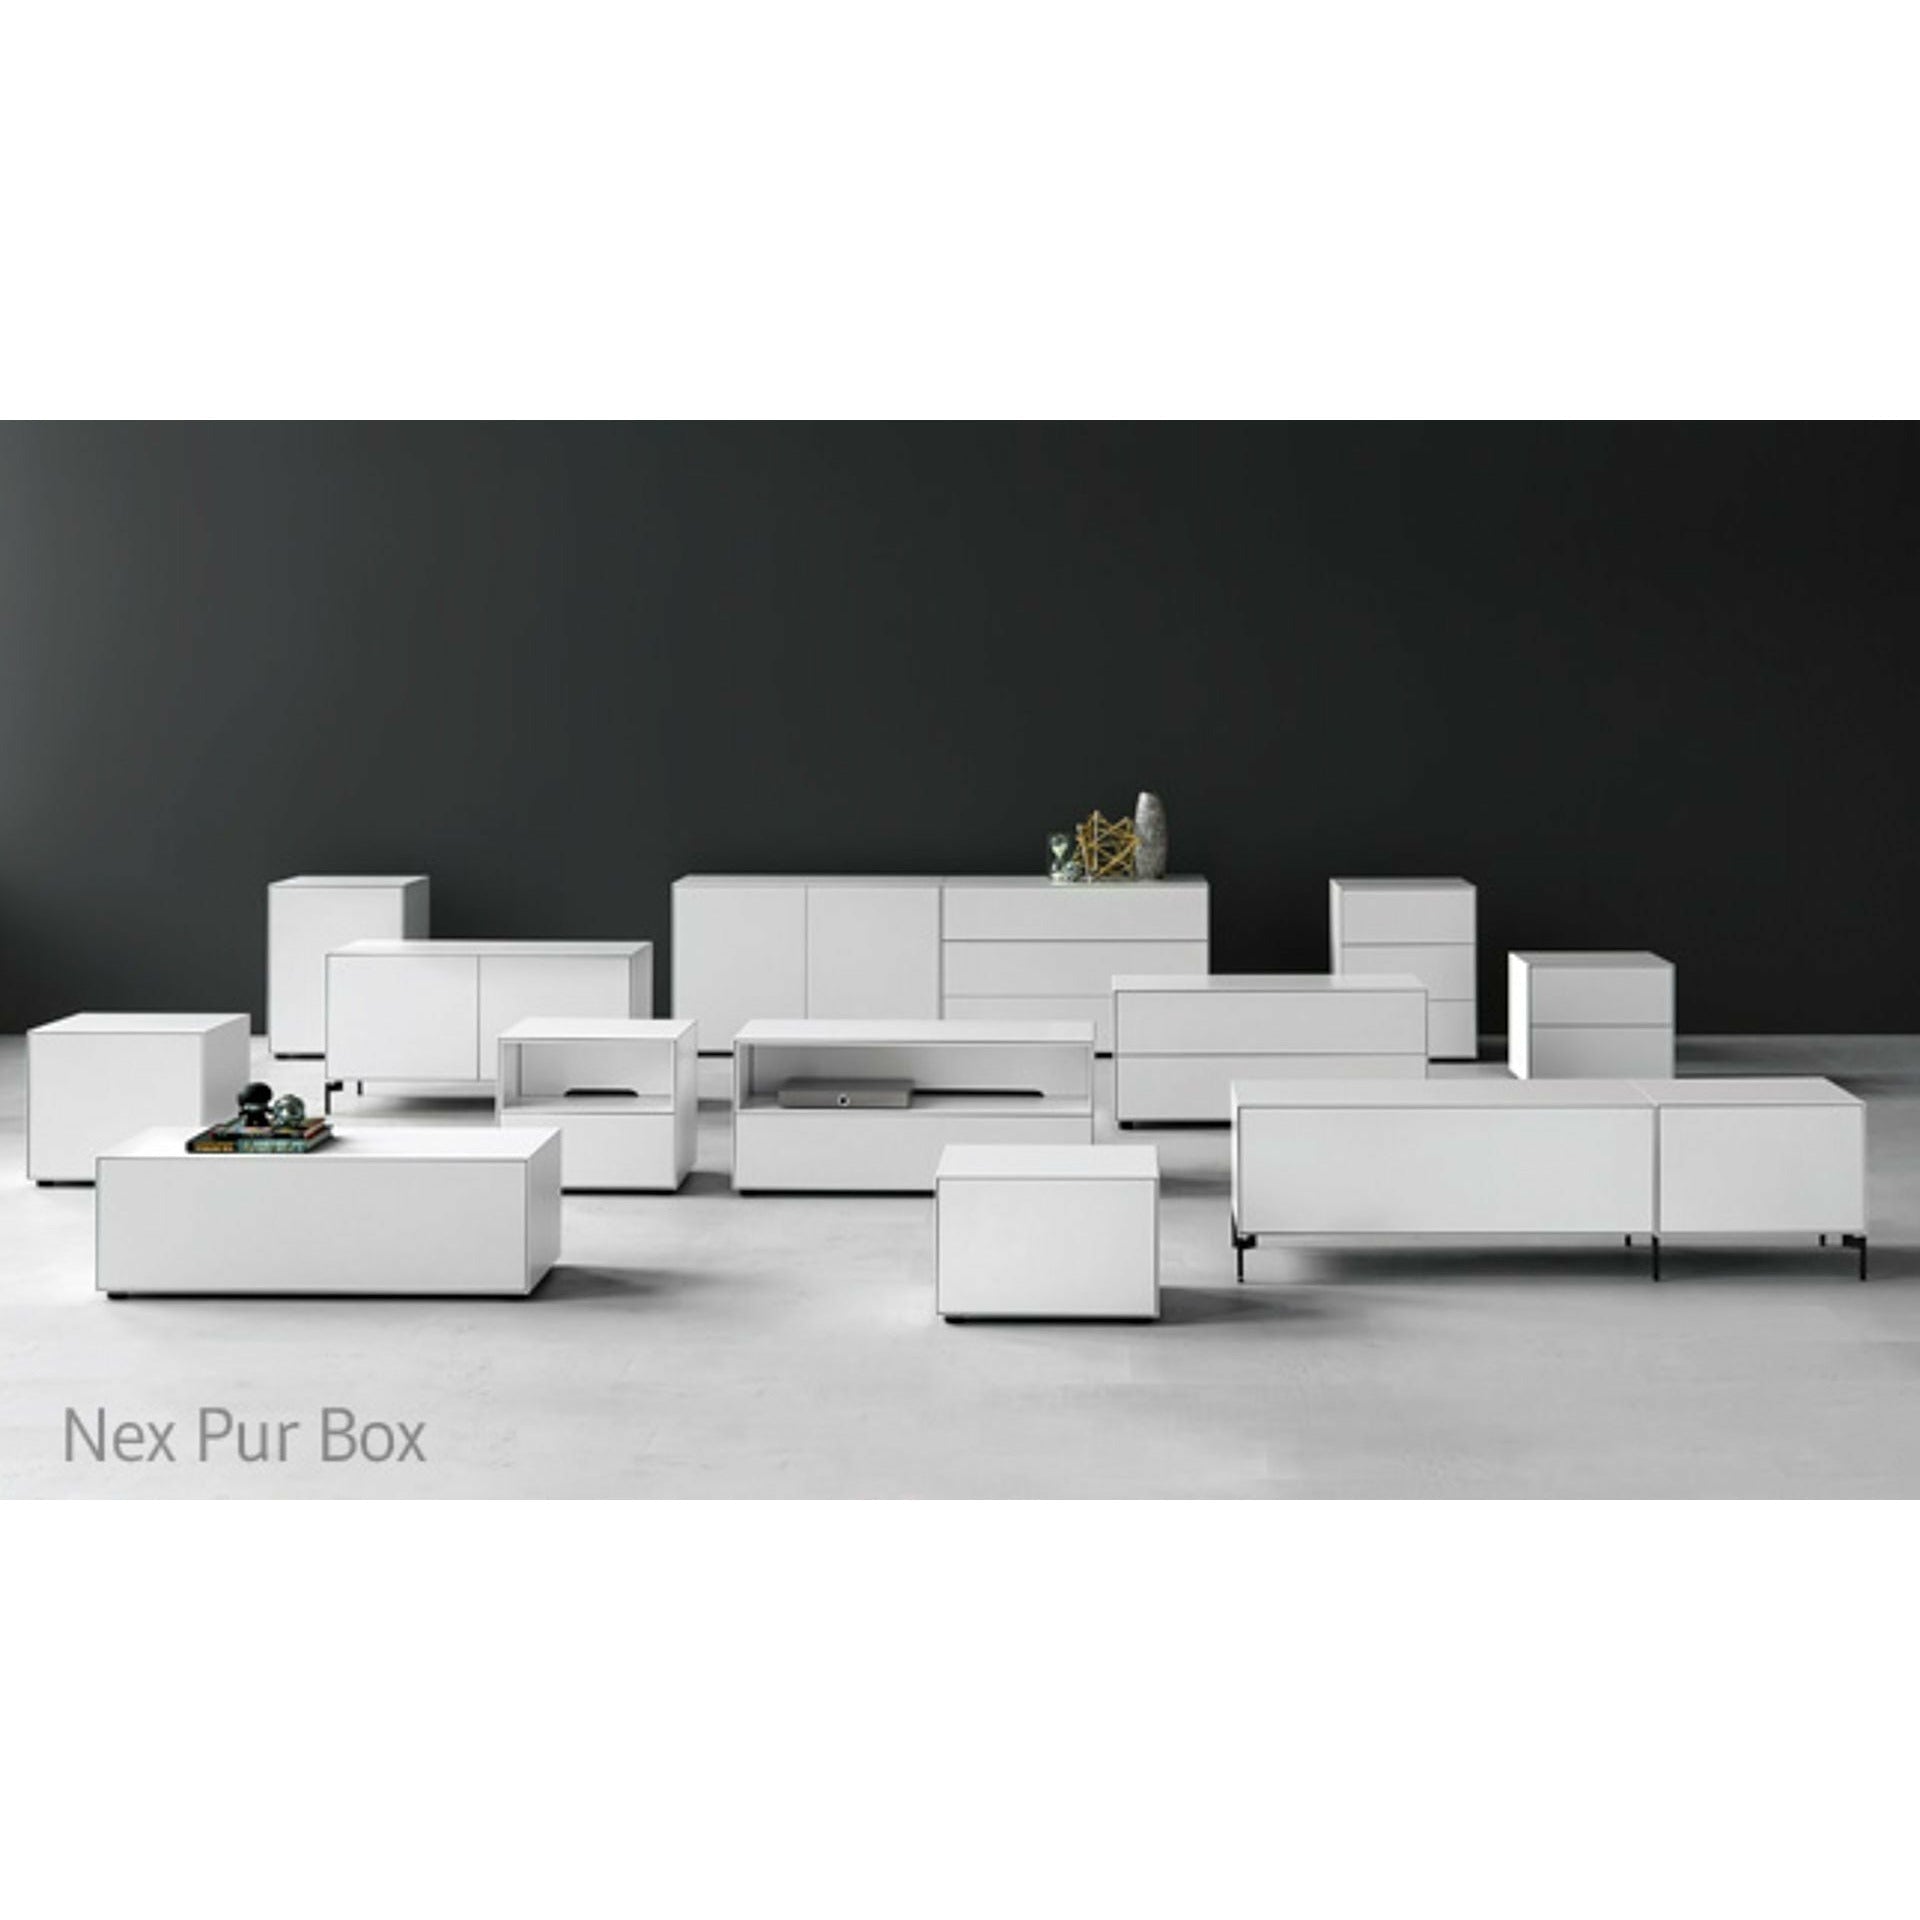 Piure Nex pur box deur hx w 50x120 cm, 1 plank